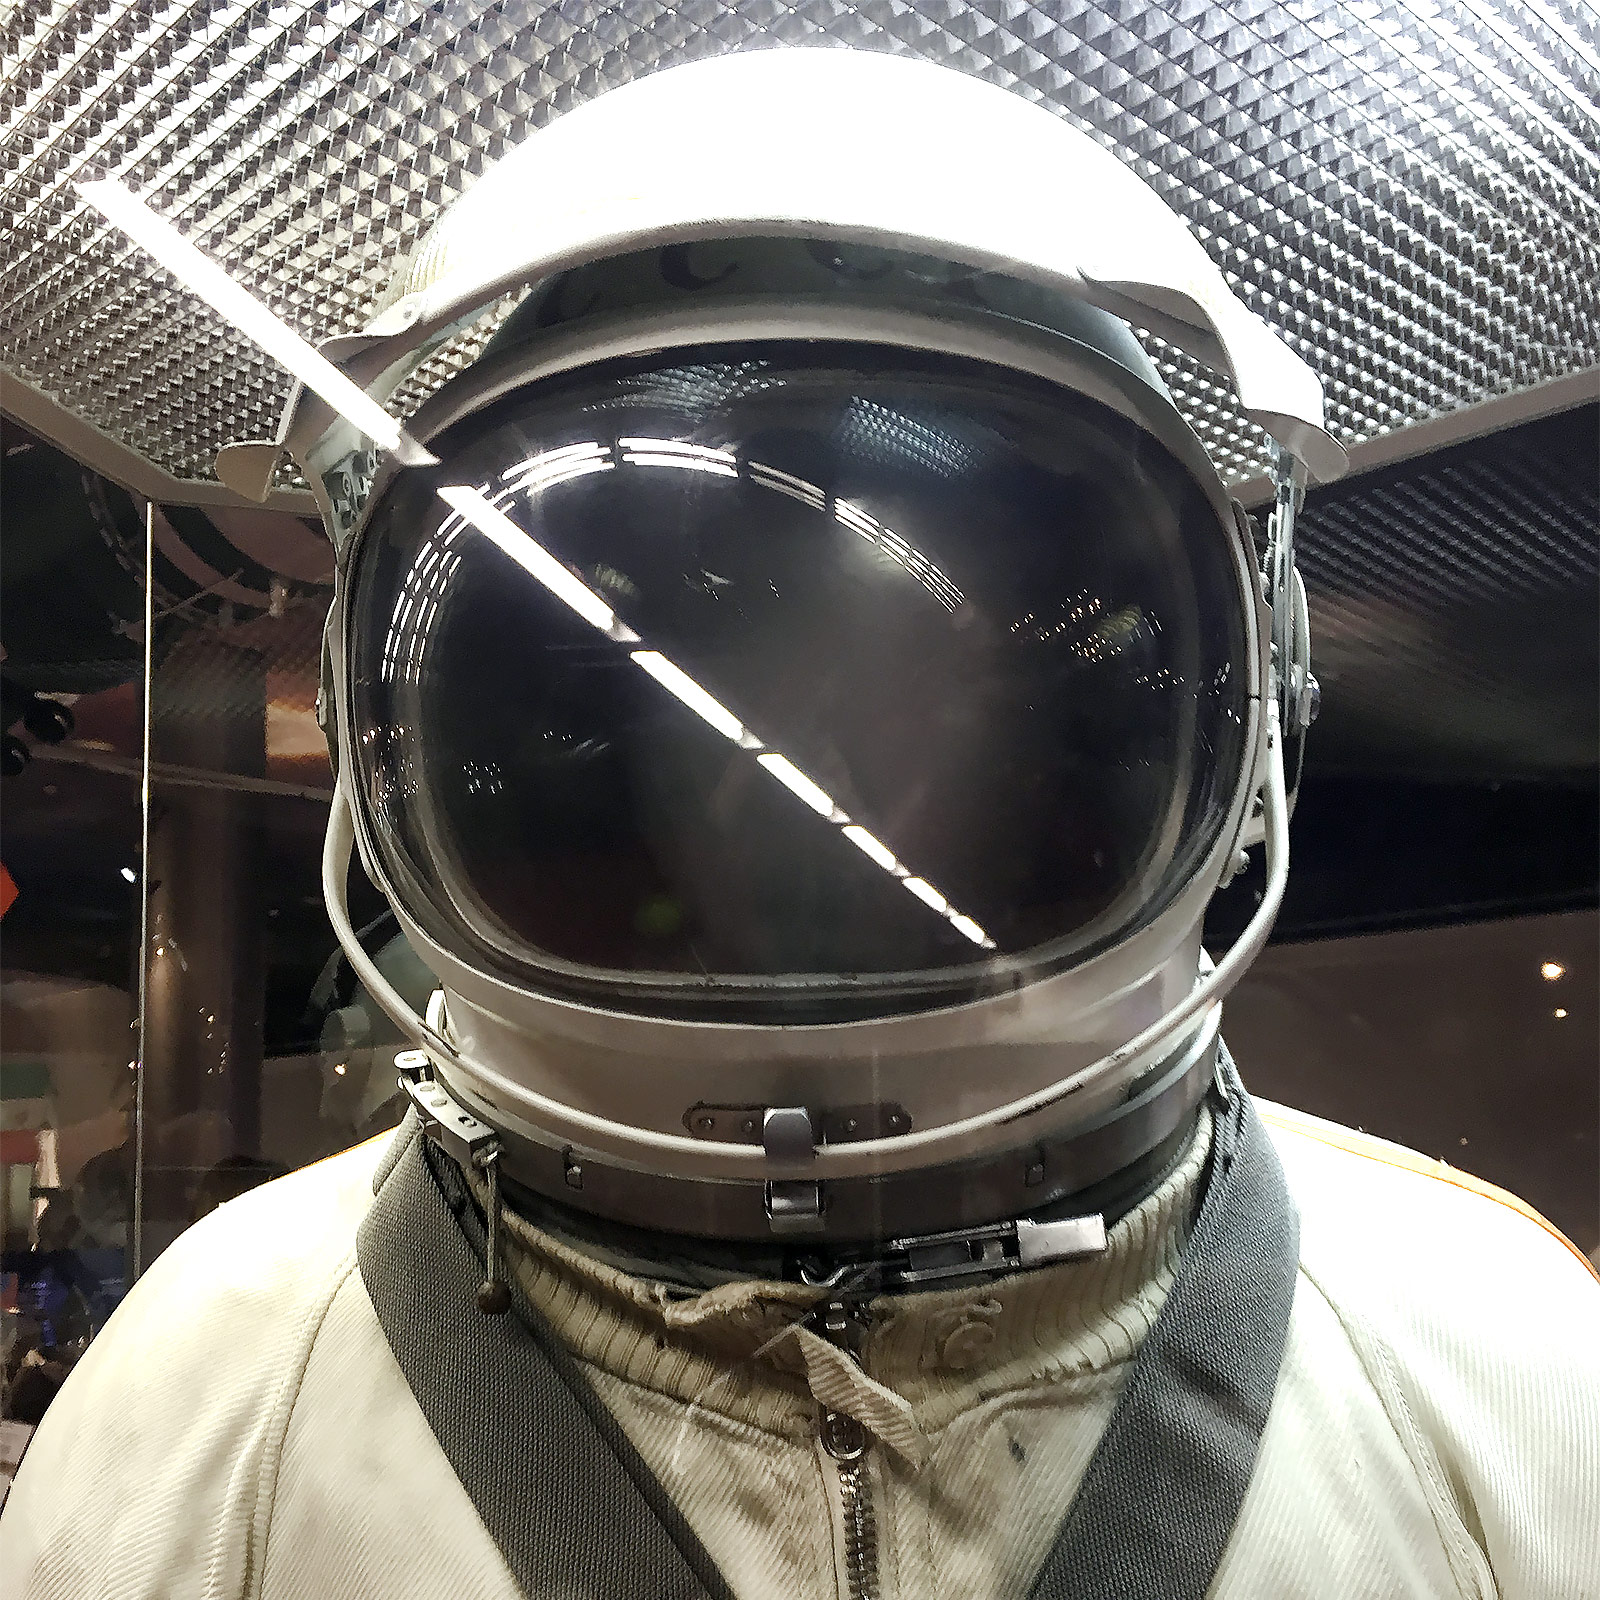 Museum of Cosmonautics, Moscow